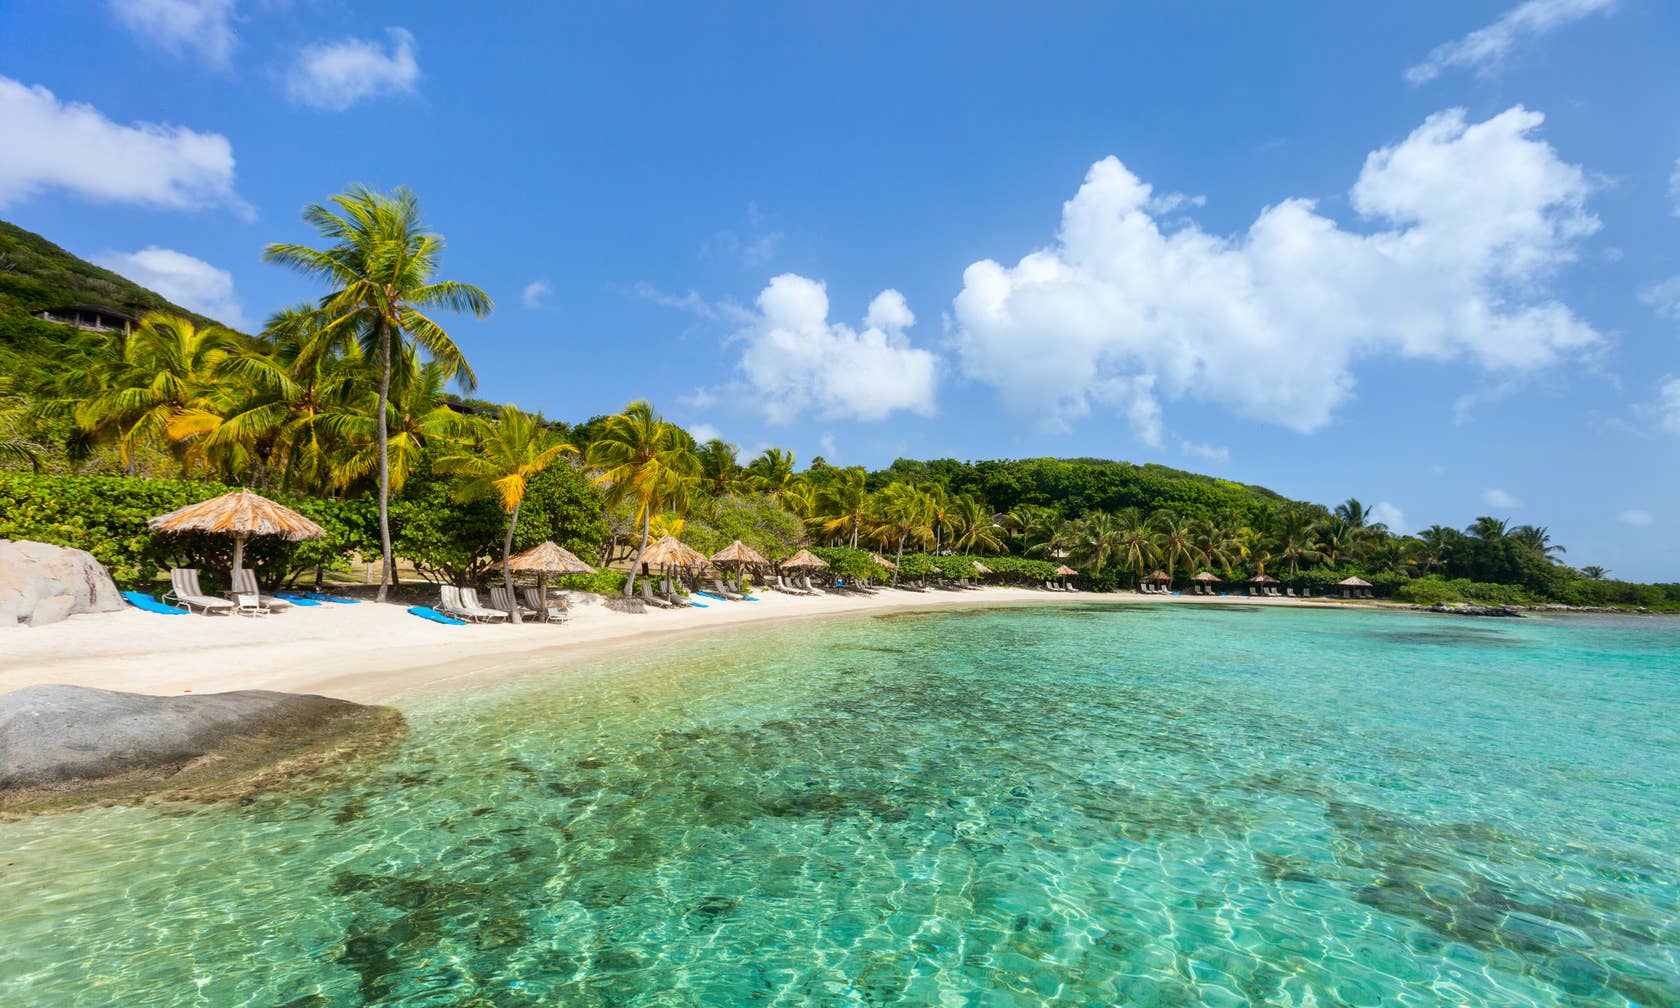 Bérbeadó nyaralók itt: Karib-térség